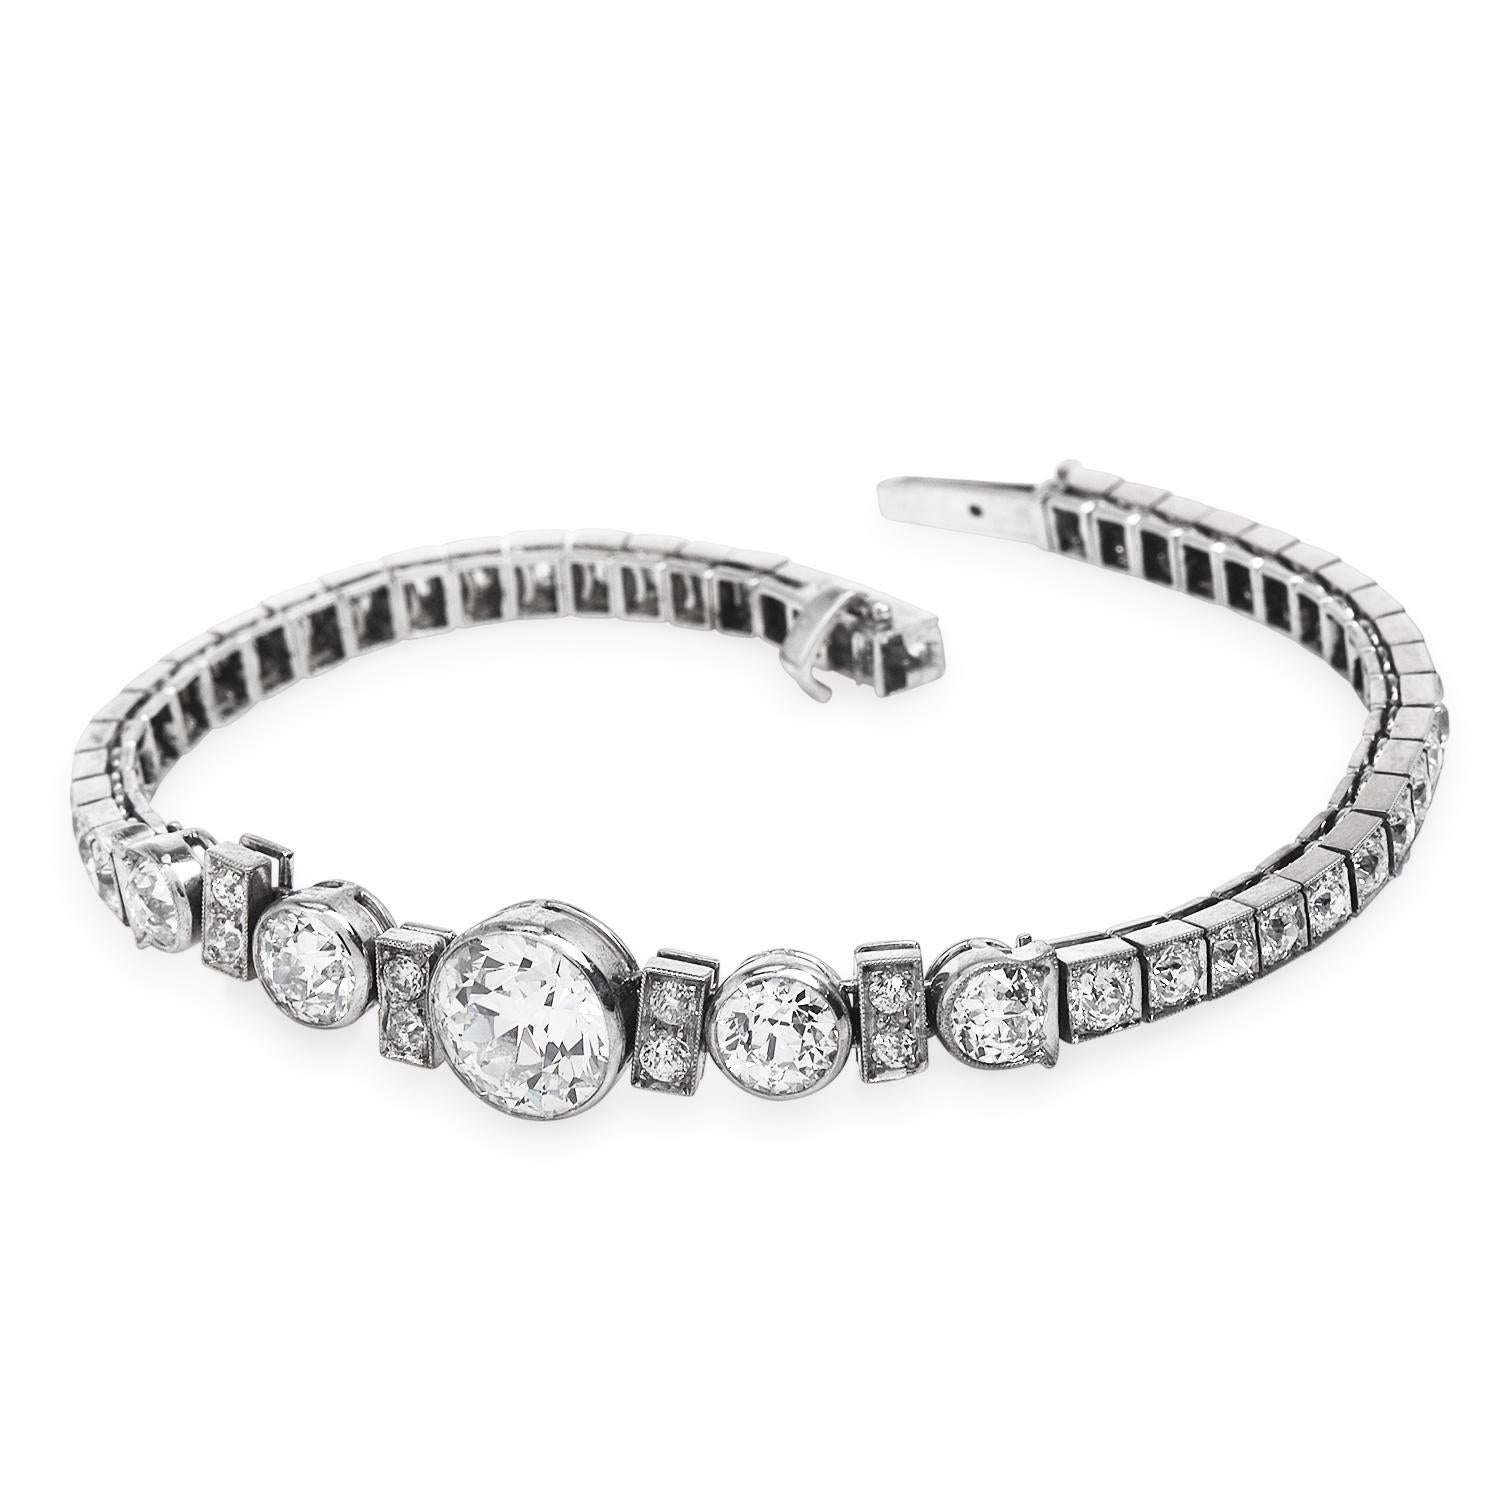 Ce superbe bracelet vintage en diamants de la ligne Cartier est réalisé en platine massif ; son centre est composé d'un diamant rond de taille européenne pesant environ 2,25 carats, de couleur F-G et de pureté VS, serti dans un chaton.  Quatre